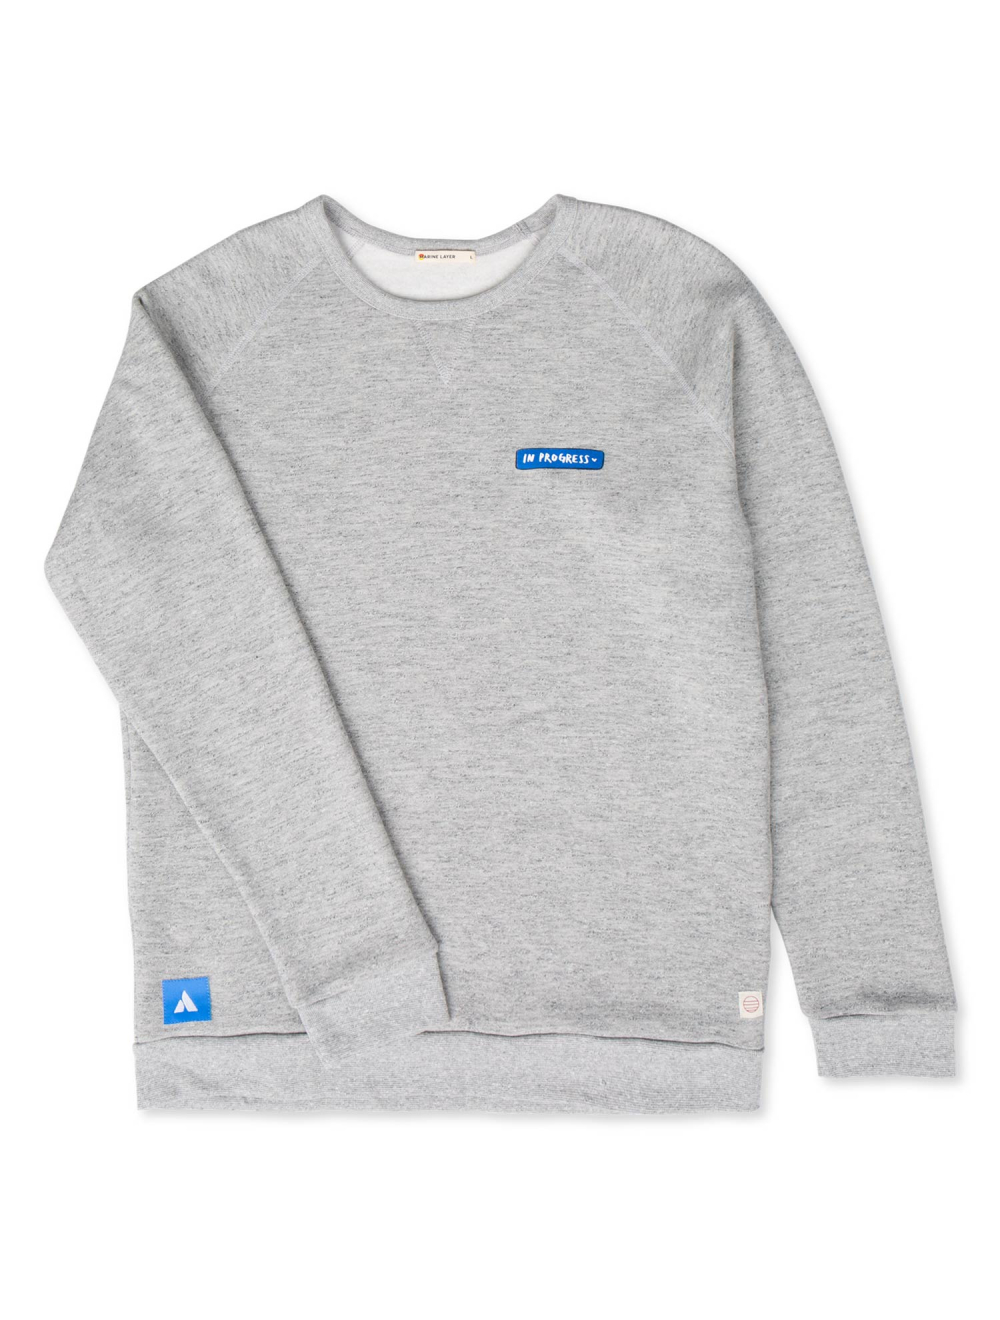 Atlassian Team Supply Co. Store | In Progress Sweater